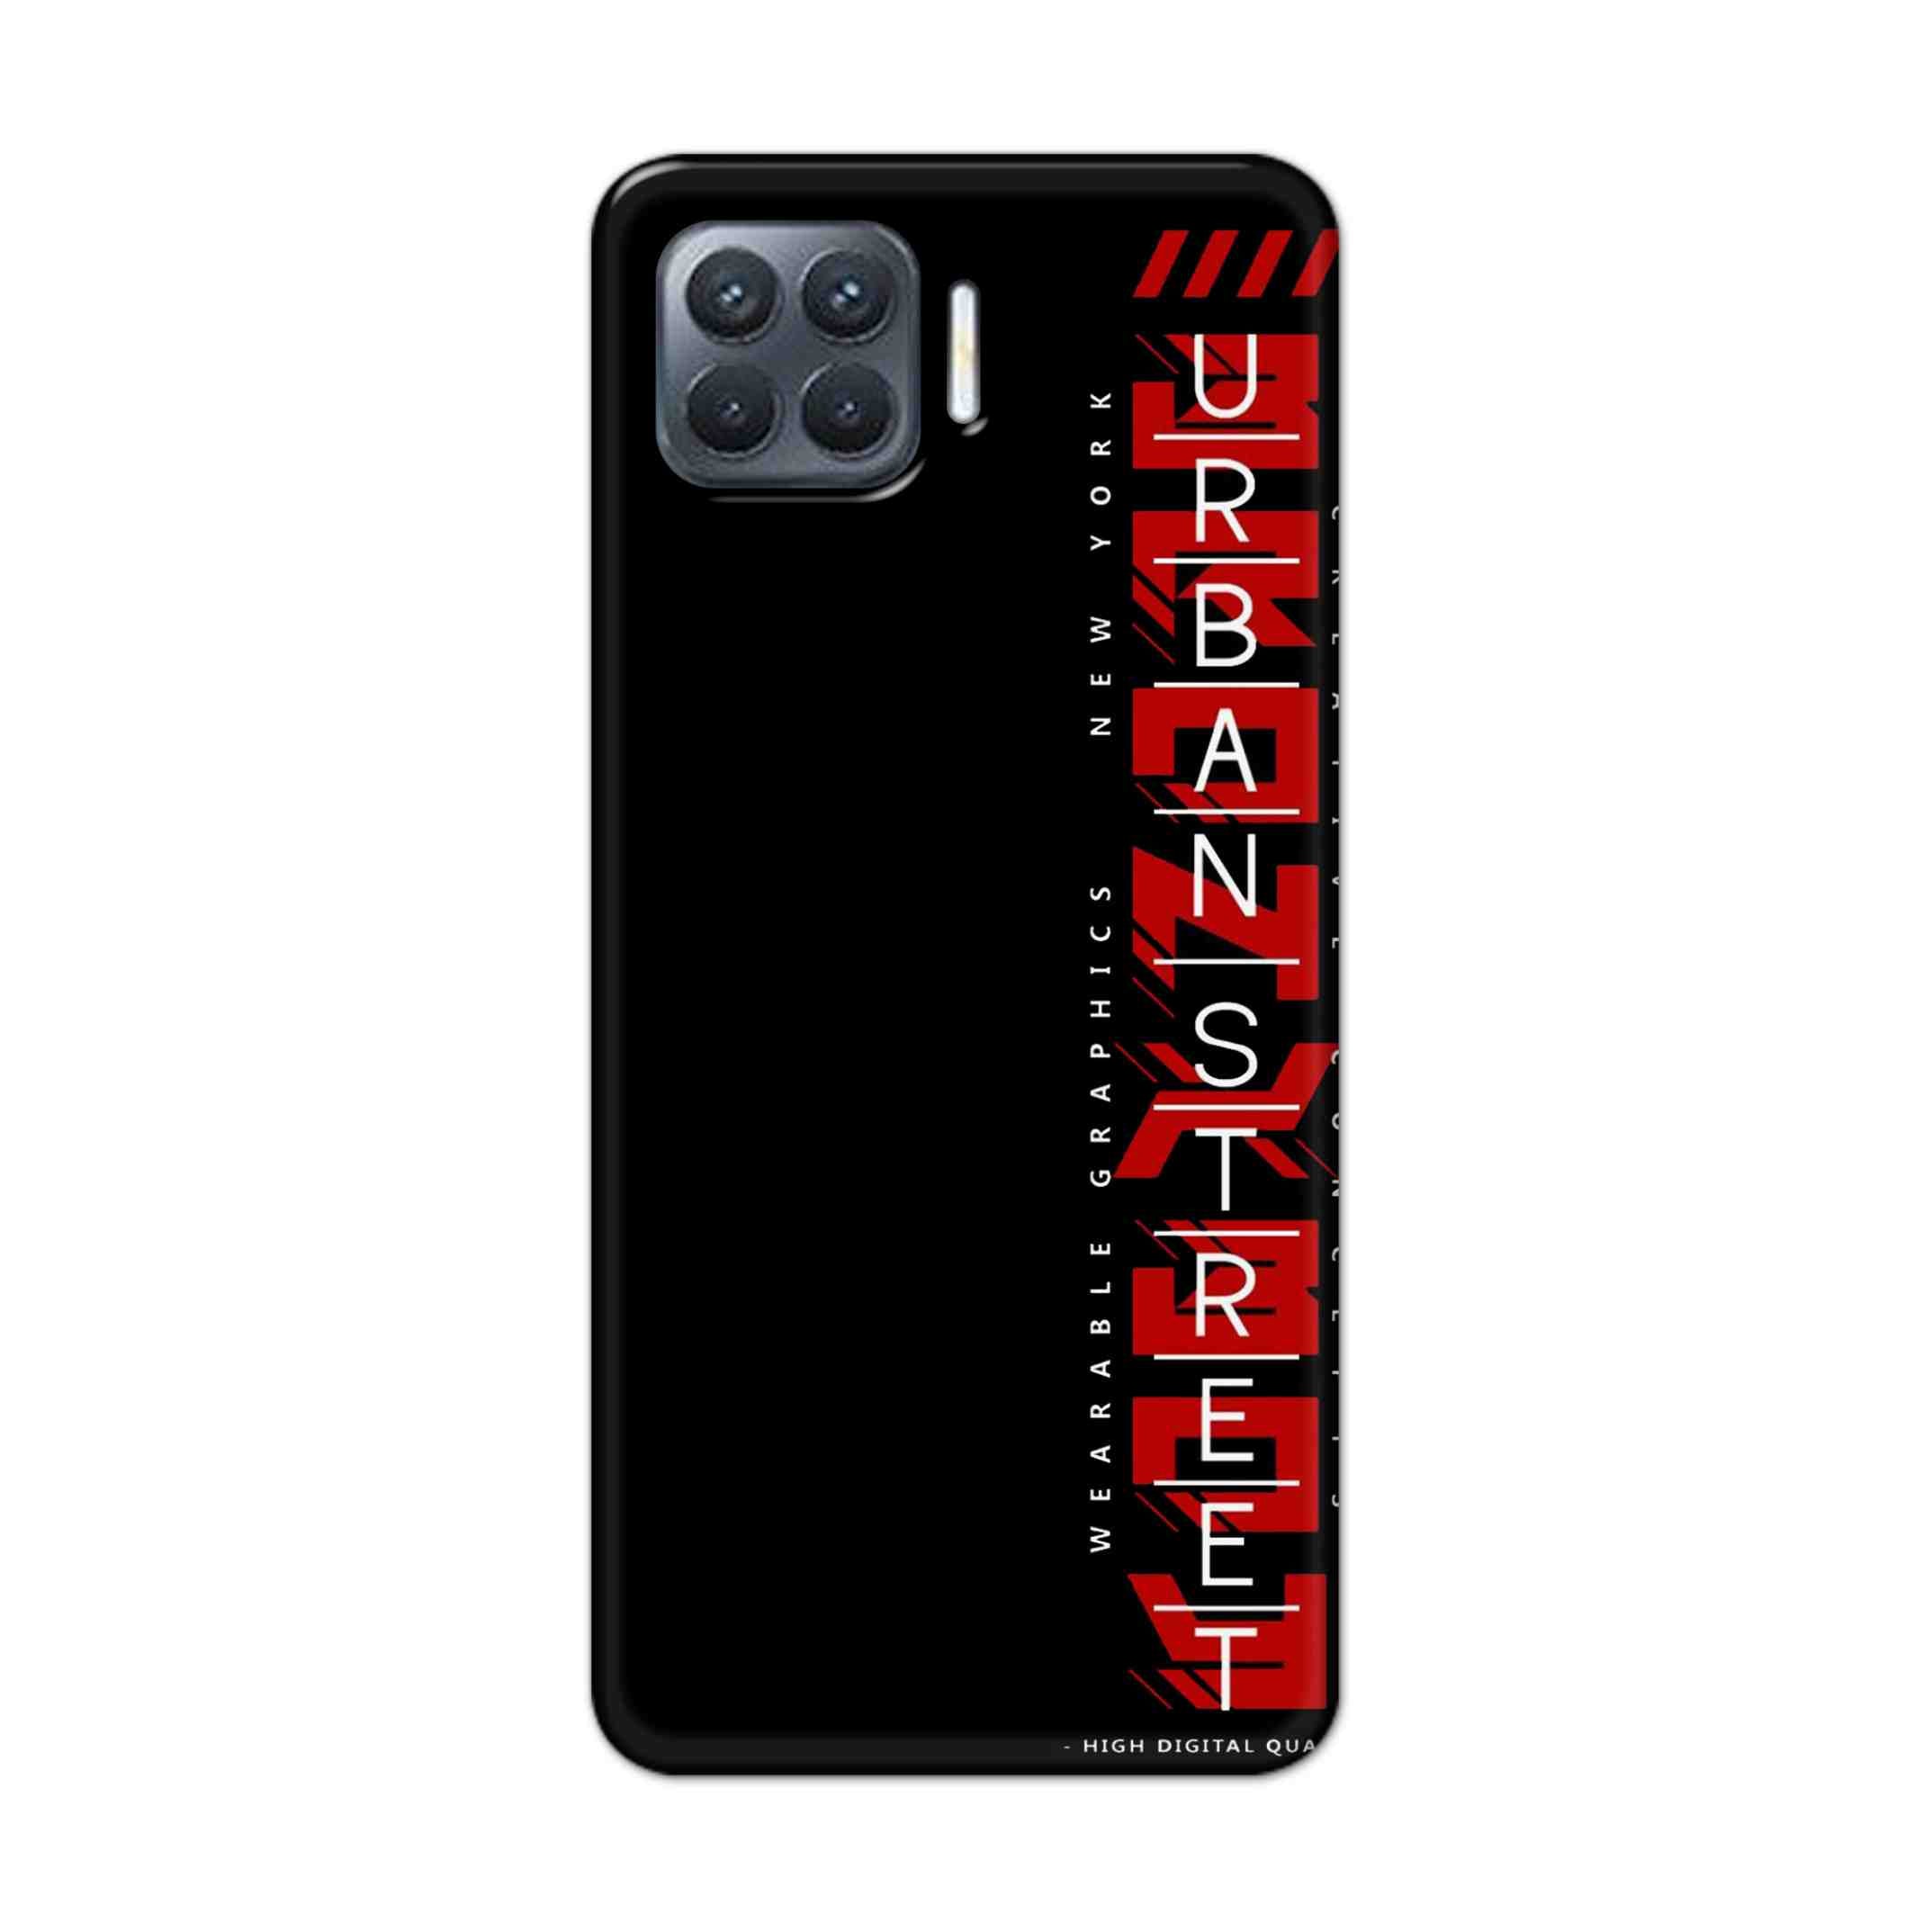 Buy Urban Street Hard Back Mobile Phone Case Cover For Oppo F17 Pro Online